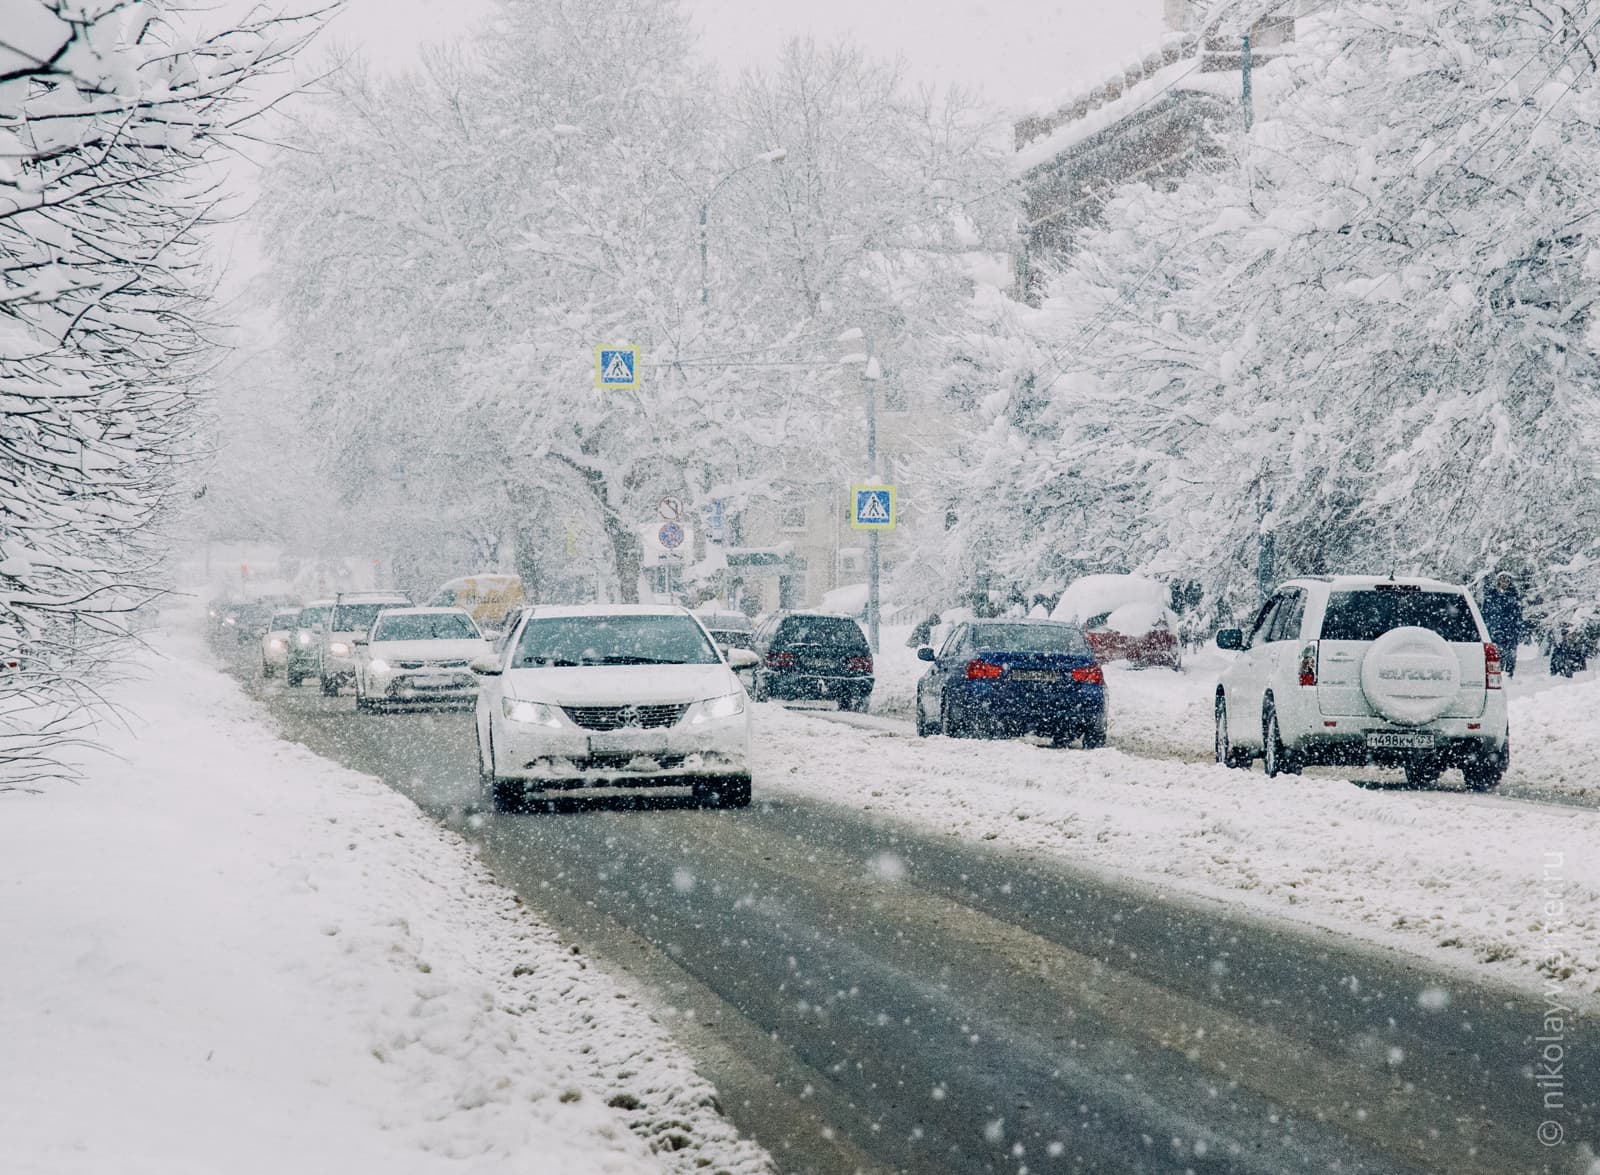 Чёрная полоса асфальта, вокруг всё в снегу: тротуары, деревья. Вереницей идут автомобили, сыплет снег.